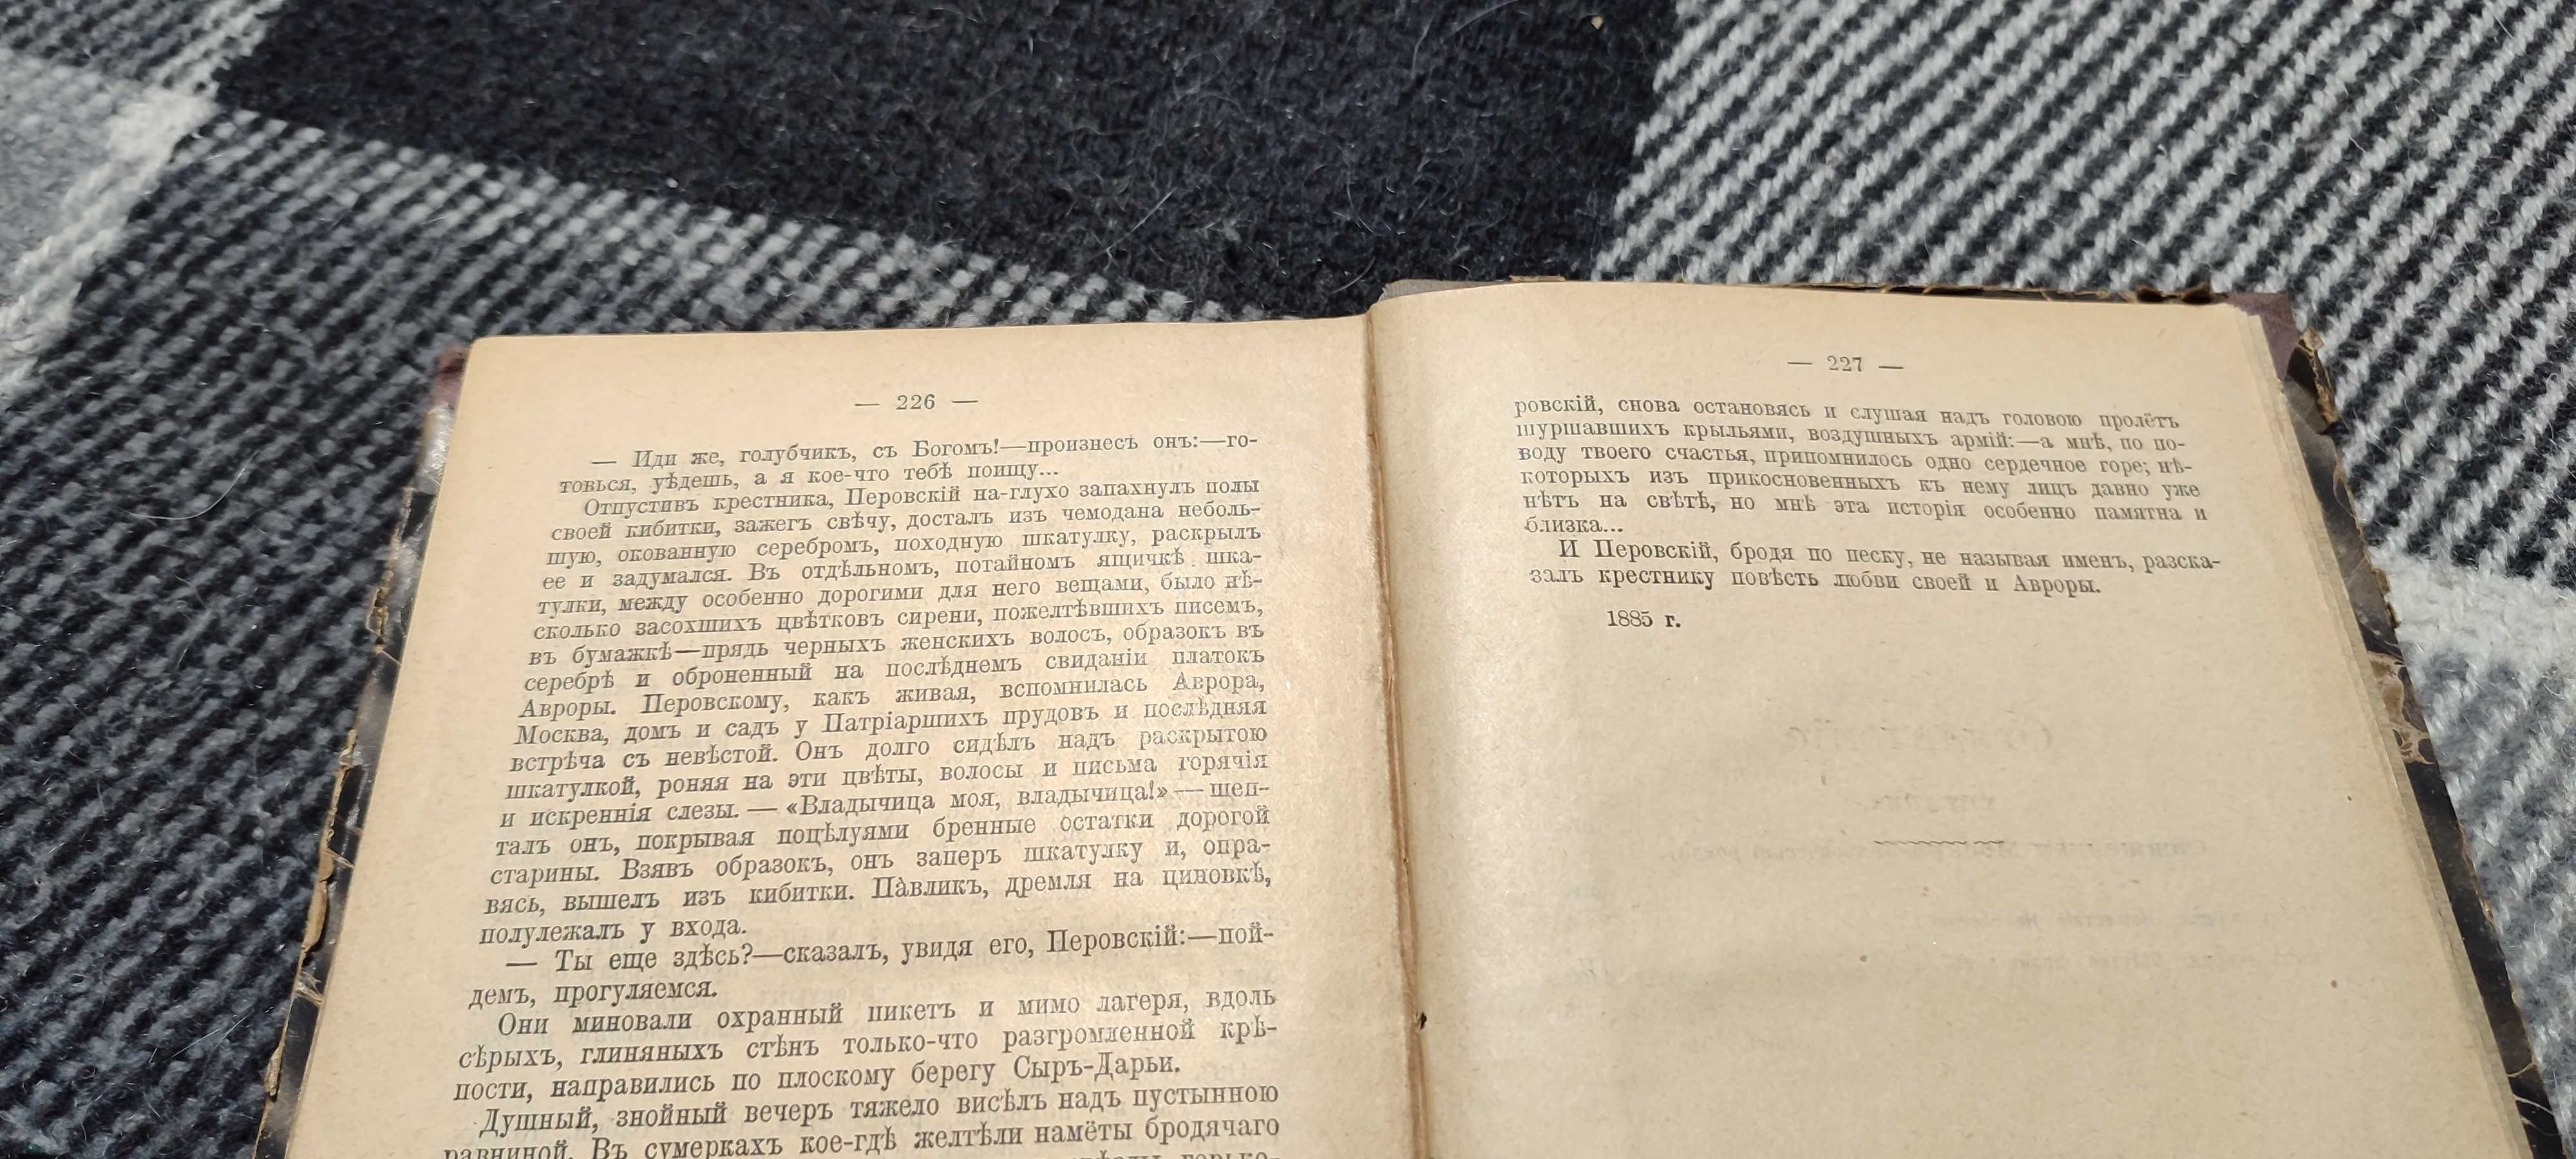 Книга Сочинения Г.П. Данилевского 1901 г